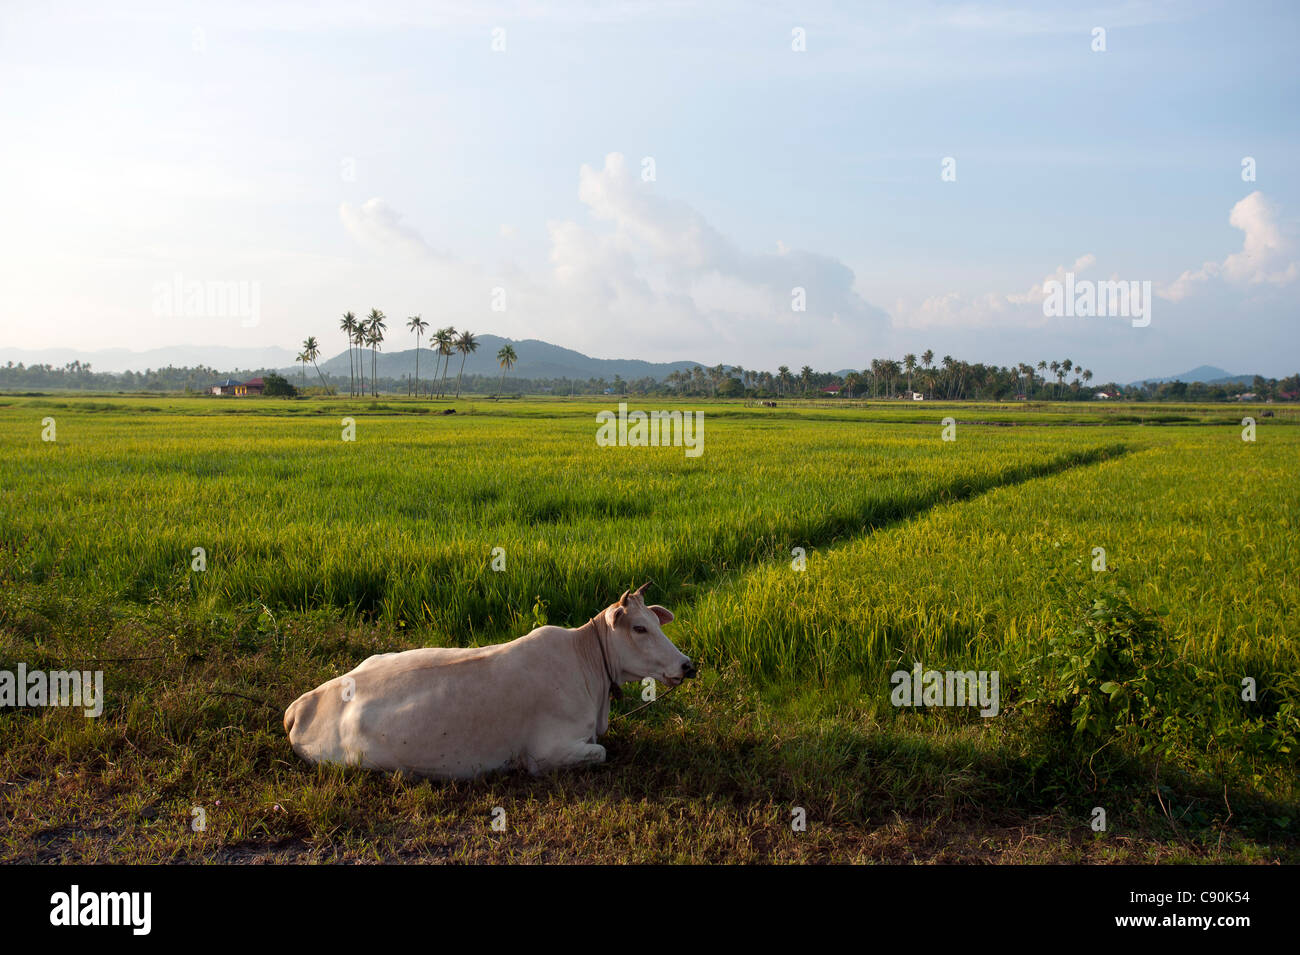 Vache et rizières dans la lumière du soleil, l'île de Lankawi, Malaisie, Asie Banque D'Images